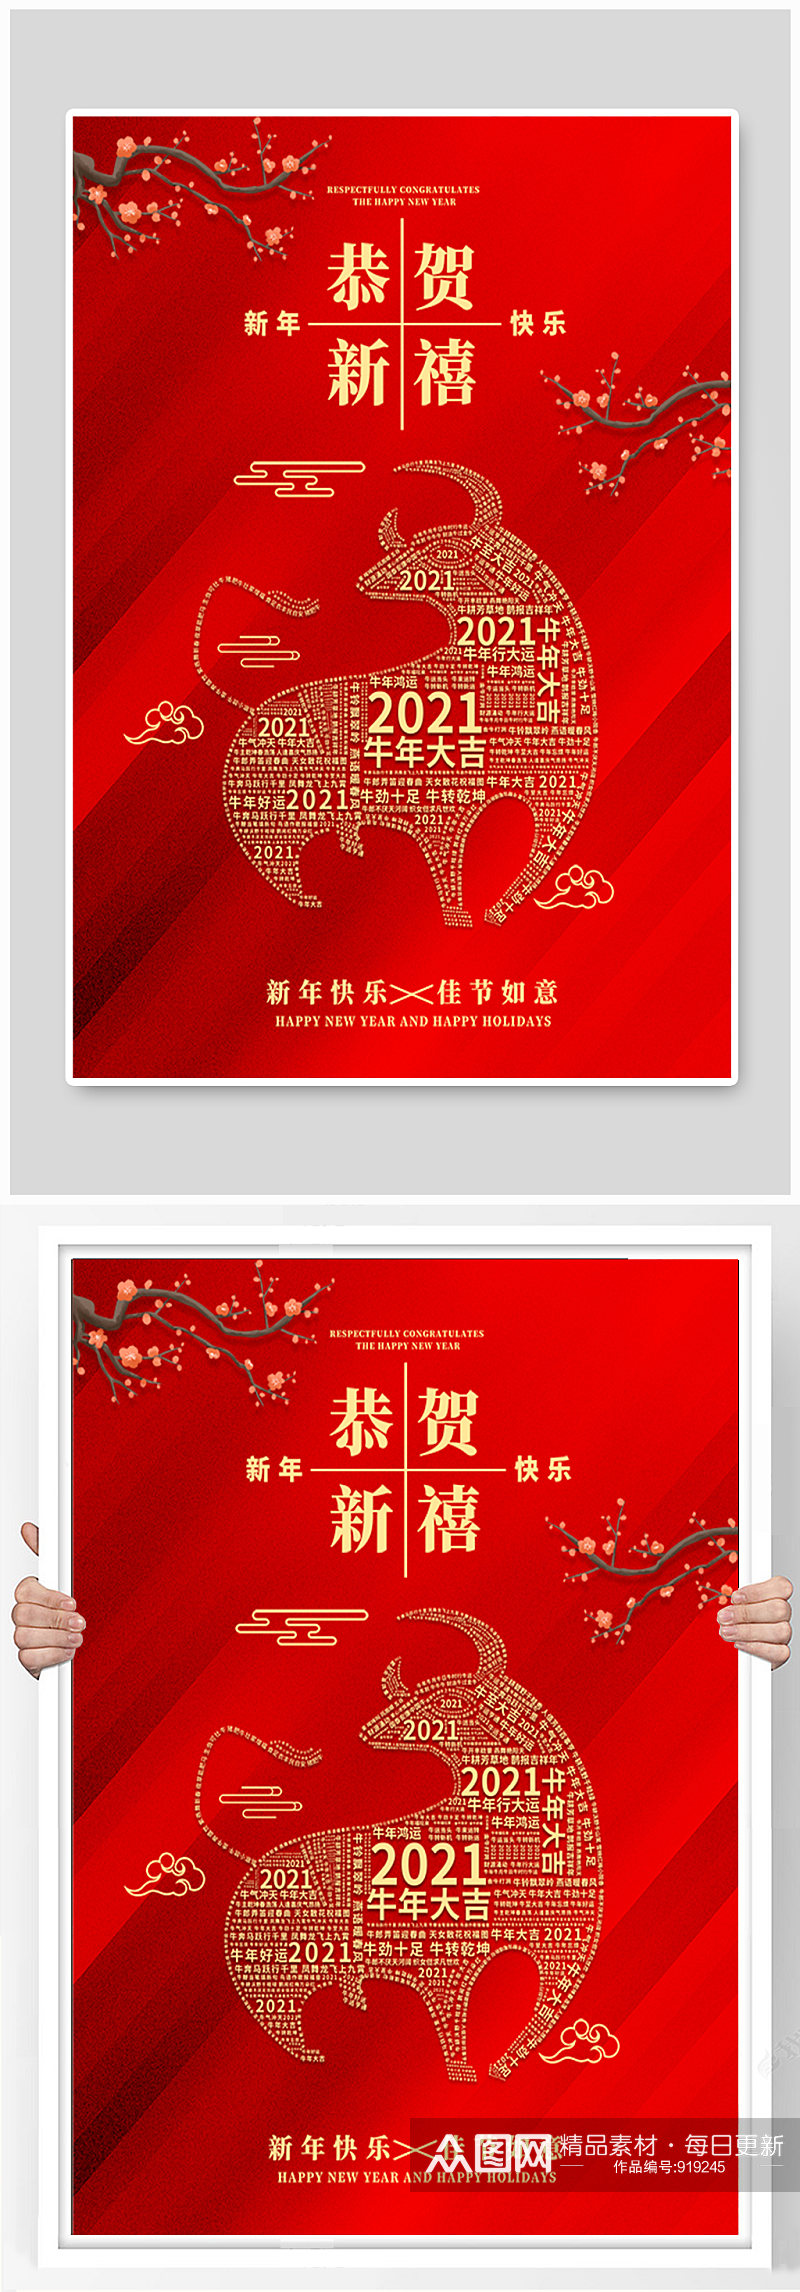 喜庆春节元旦牛年新年海报素材